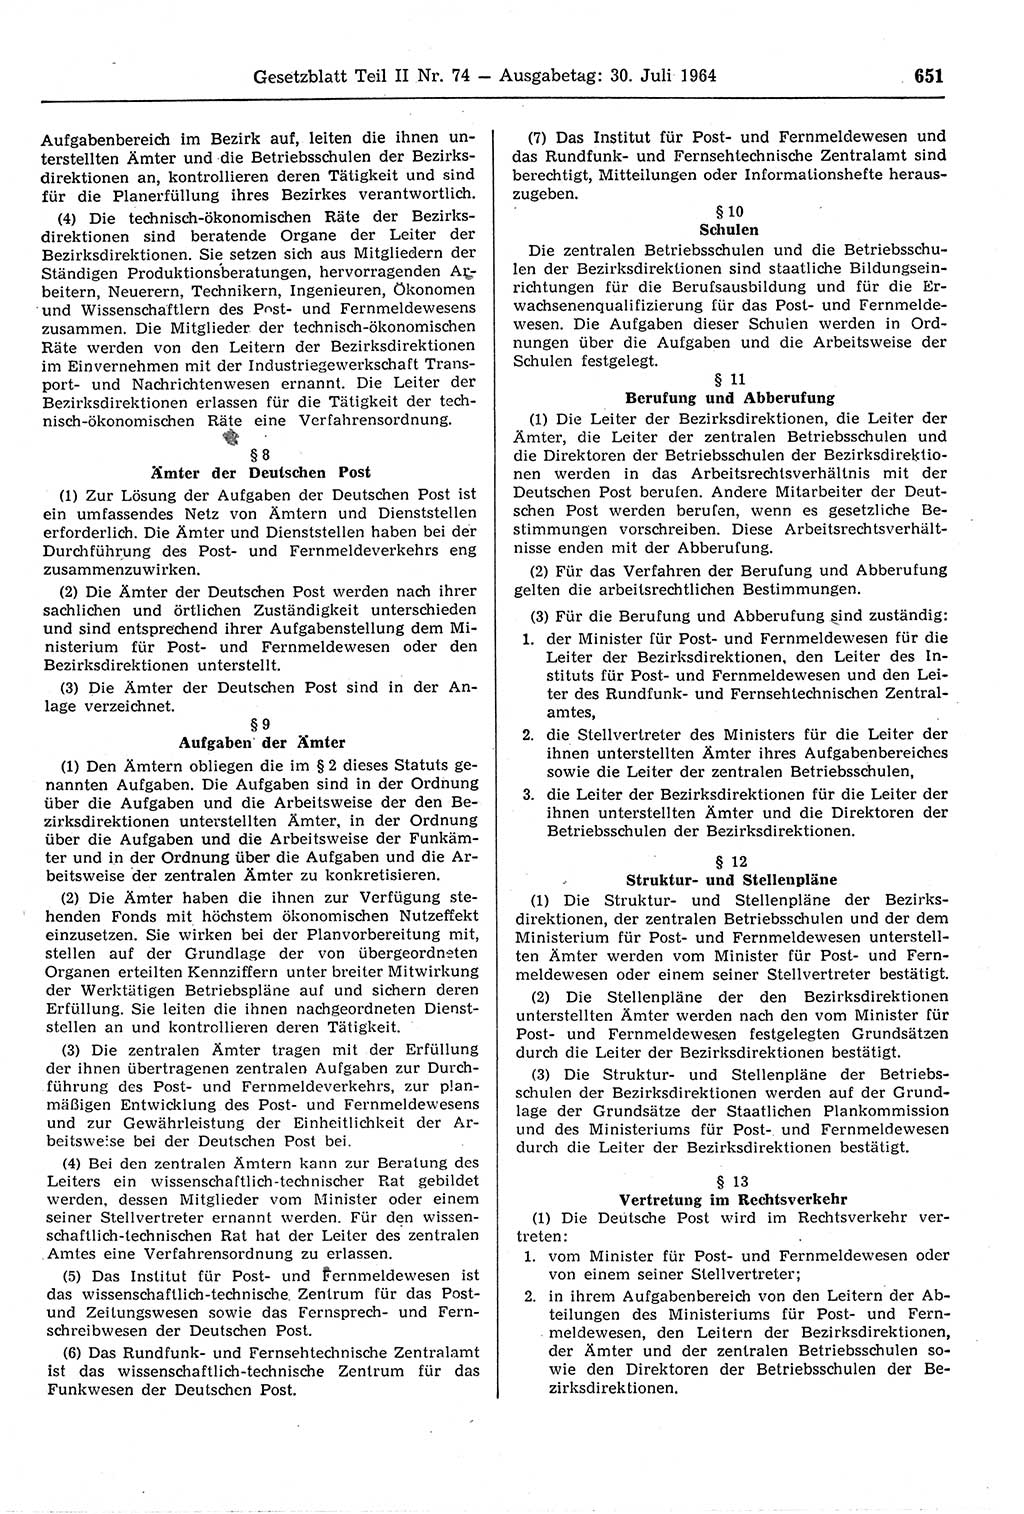 Gesetzblatt (GBl.) der Deutschen Demokratischen Republik (DDR) Teil ⅠⅠ 1964, Seite 651 (GBl. DDR ⅠⅠ 1964, S. 651)